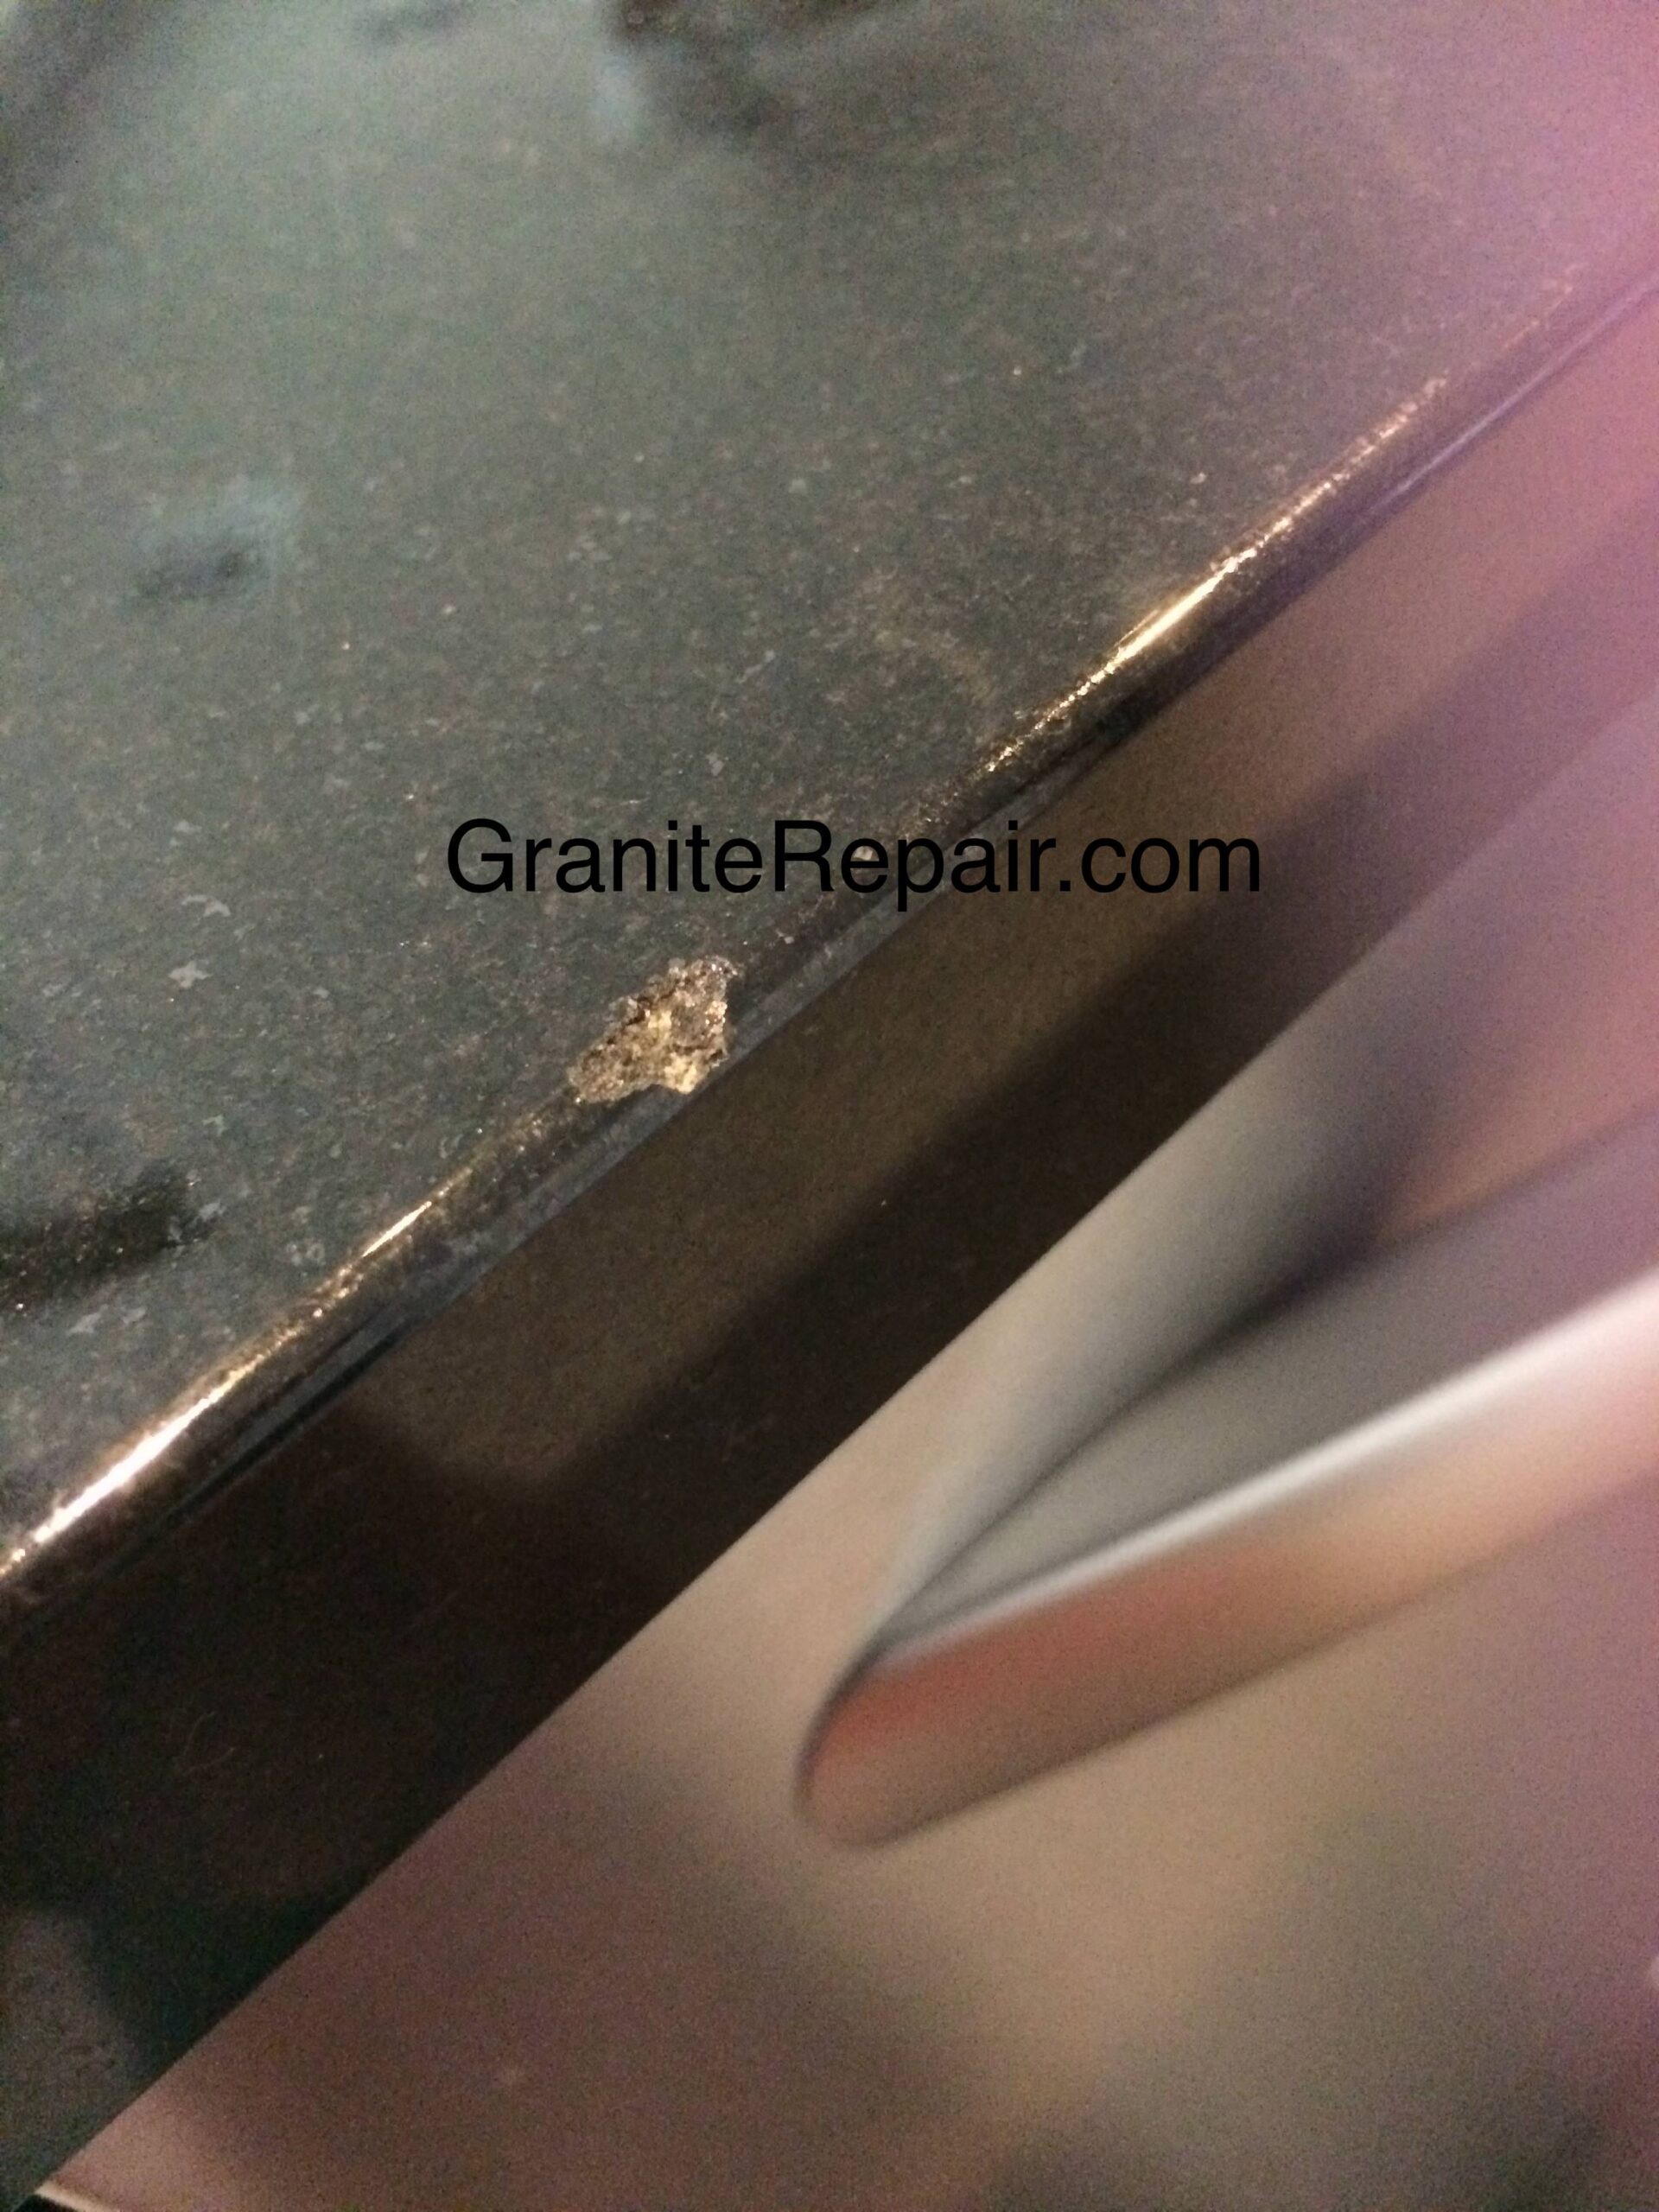 black-quartz-chipped-edge-before-repair